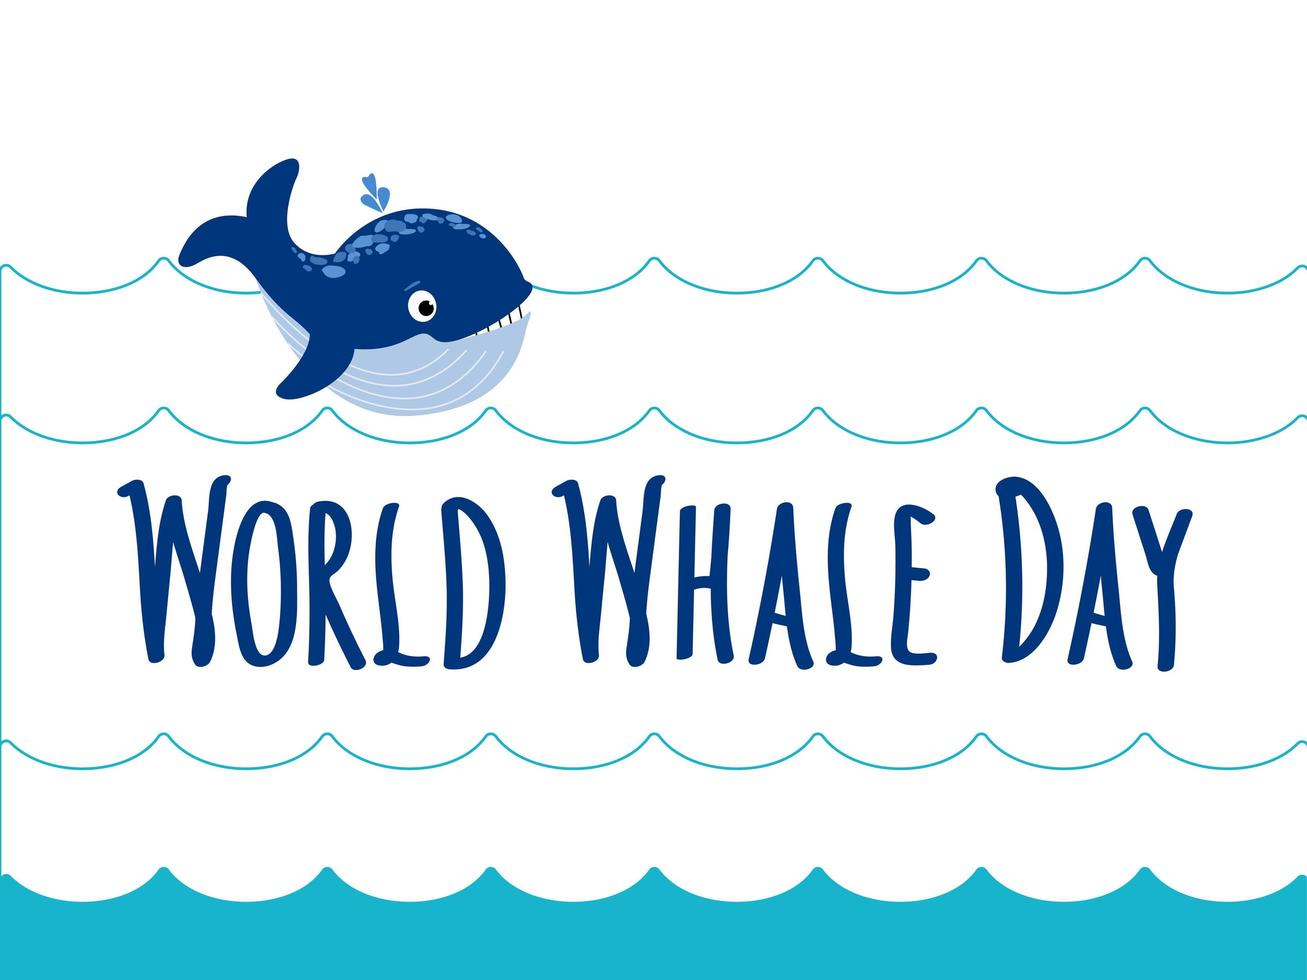 lettere scritte a mano della giornata mondiale della balena e balena nelle onde del mare blu. segno astratto della giornata mondiale delle balene e carino baby-balena. protezione dei mammiferi marini. illustrazione piatta vettoriale per carta, logo, banner